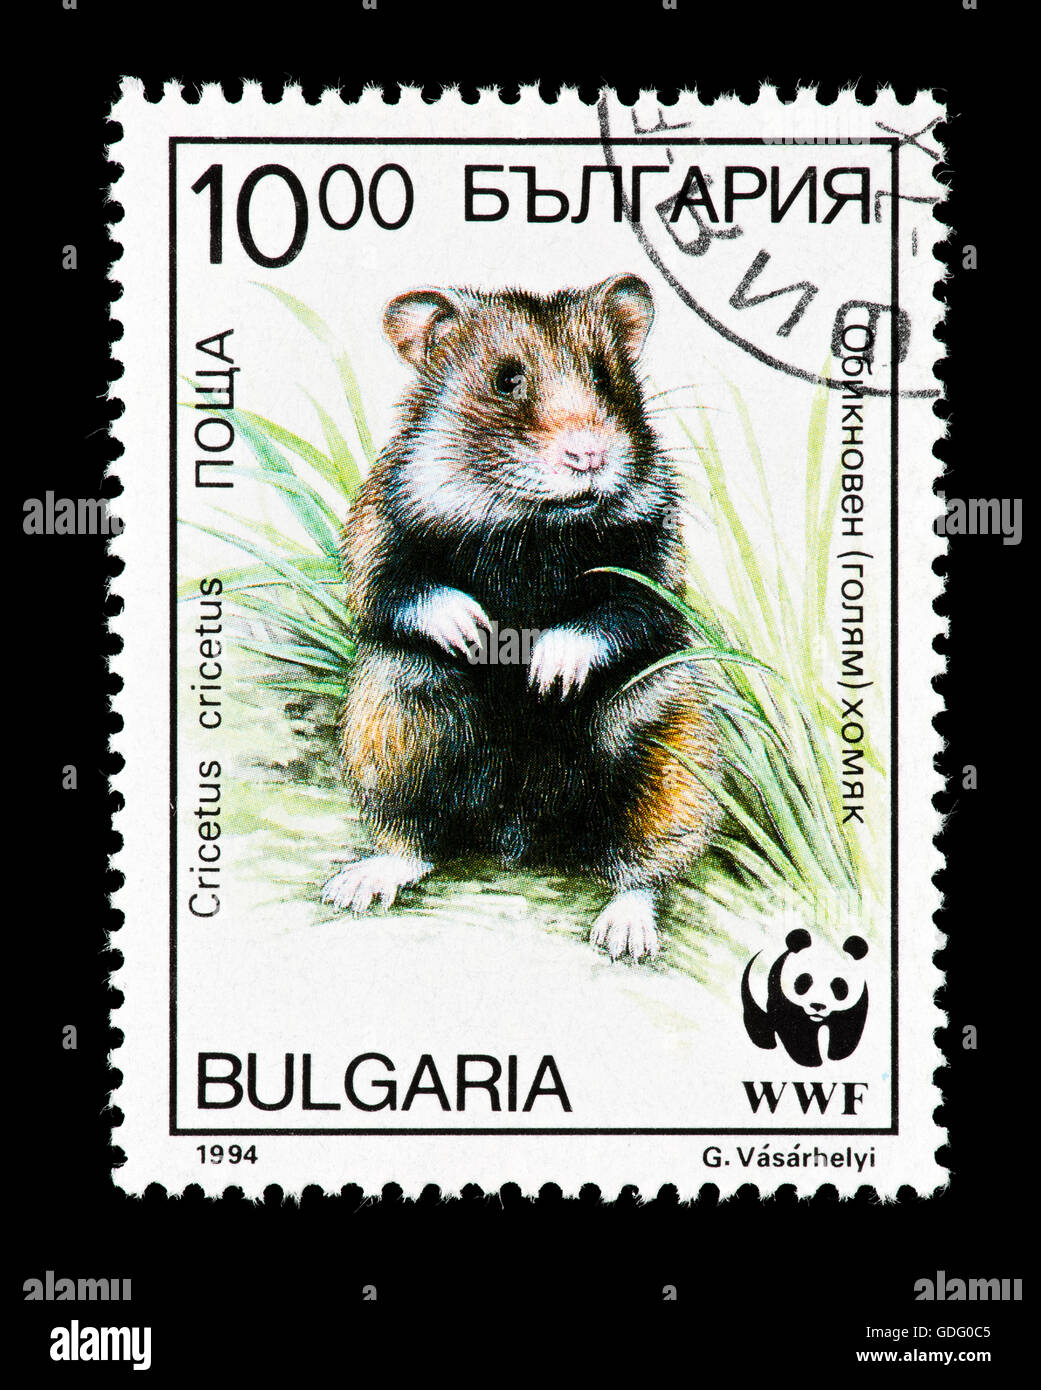 Timbre-poste de la Bulgarie représentant une un black-bellied ou hamster commun (Cricetus cricetus) Banque D'Images